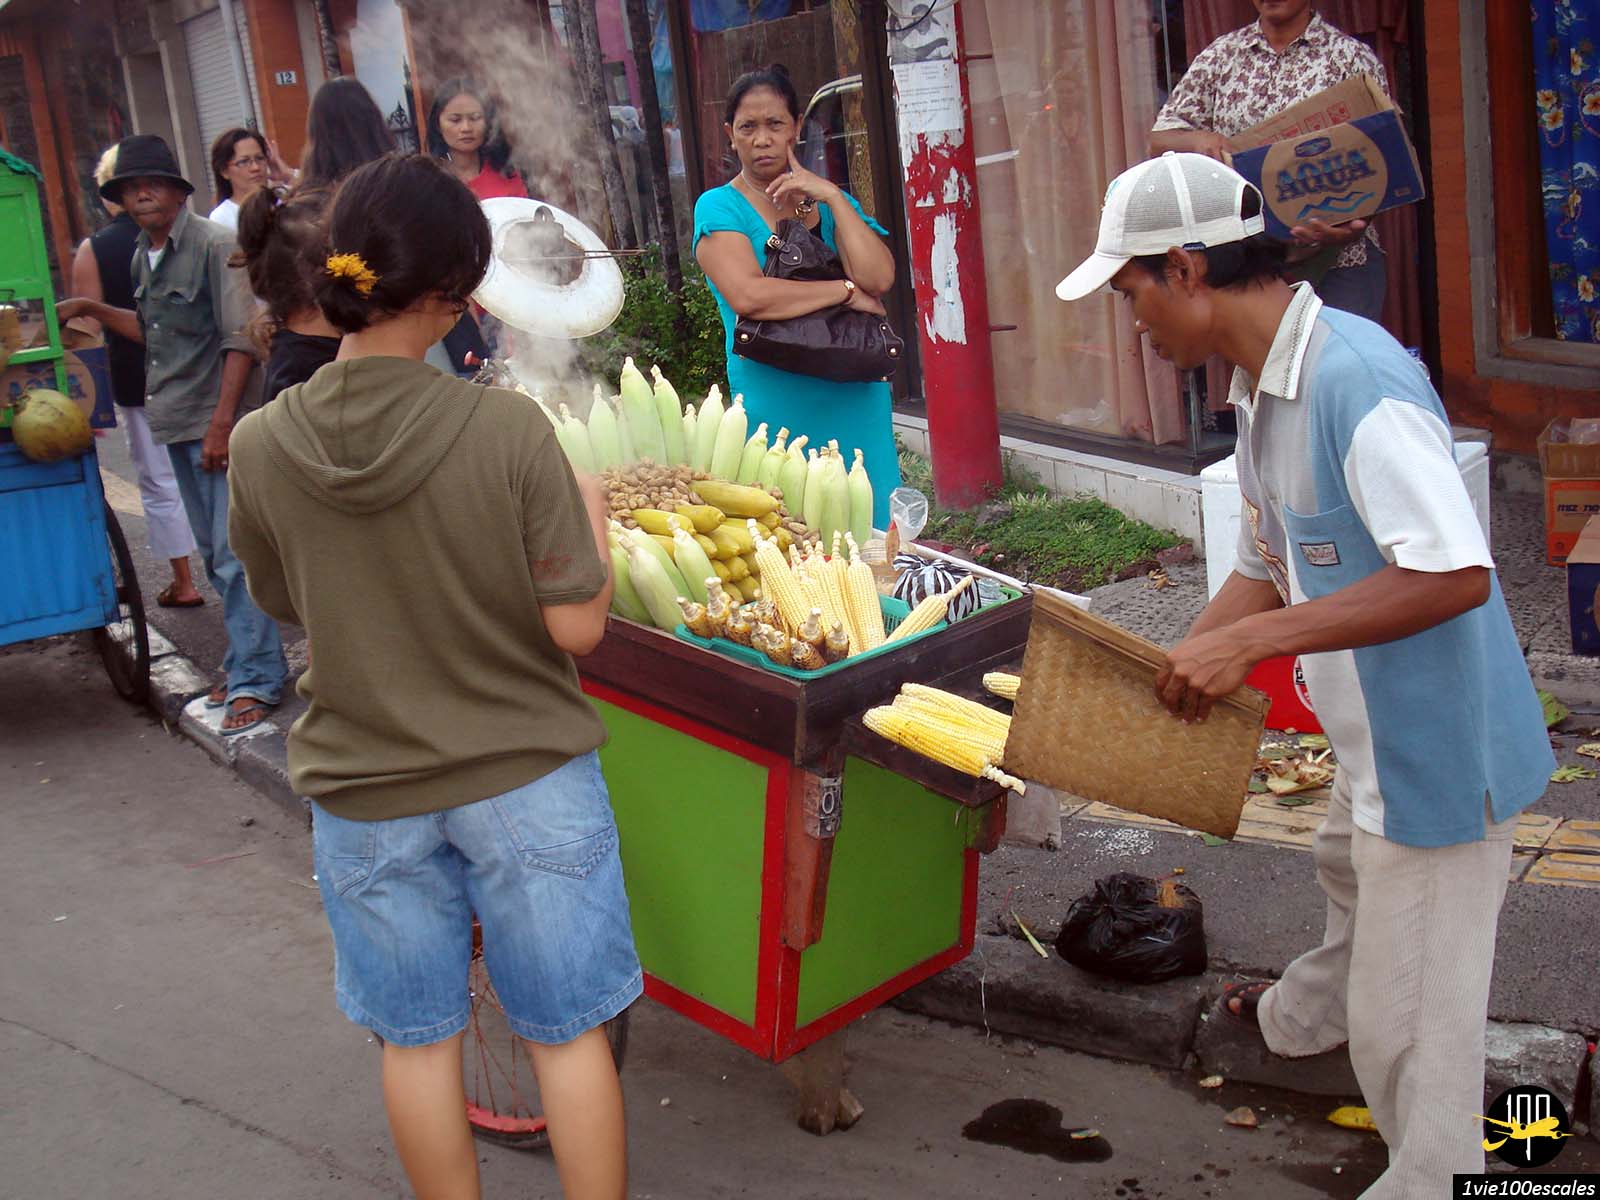 Un marchand ambulant dans les rues de Kuta proposant du blé et du mais chaud